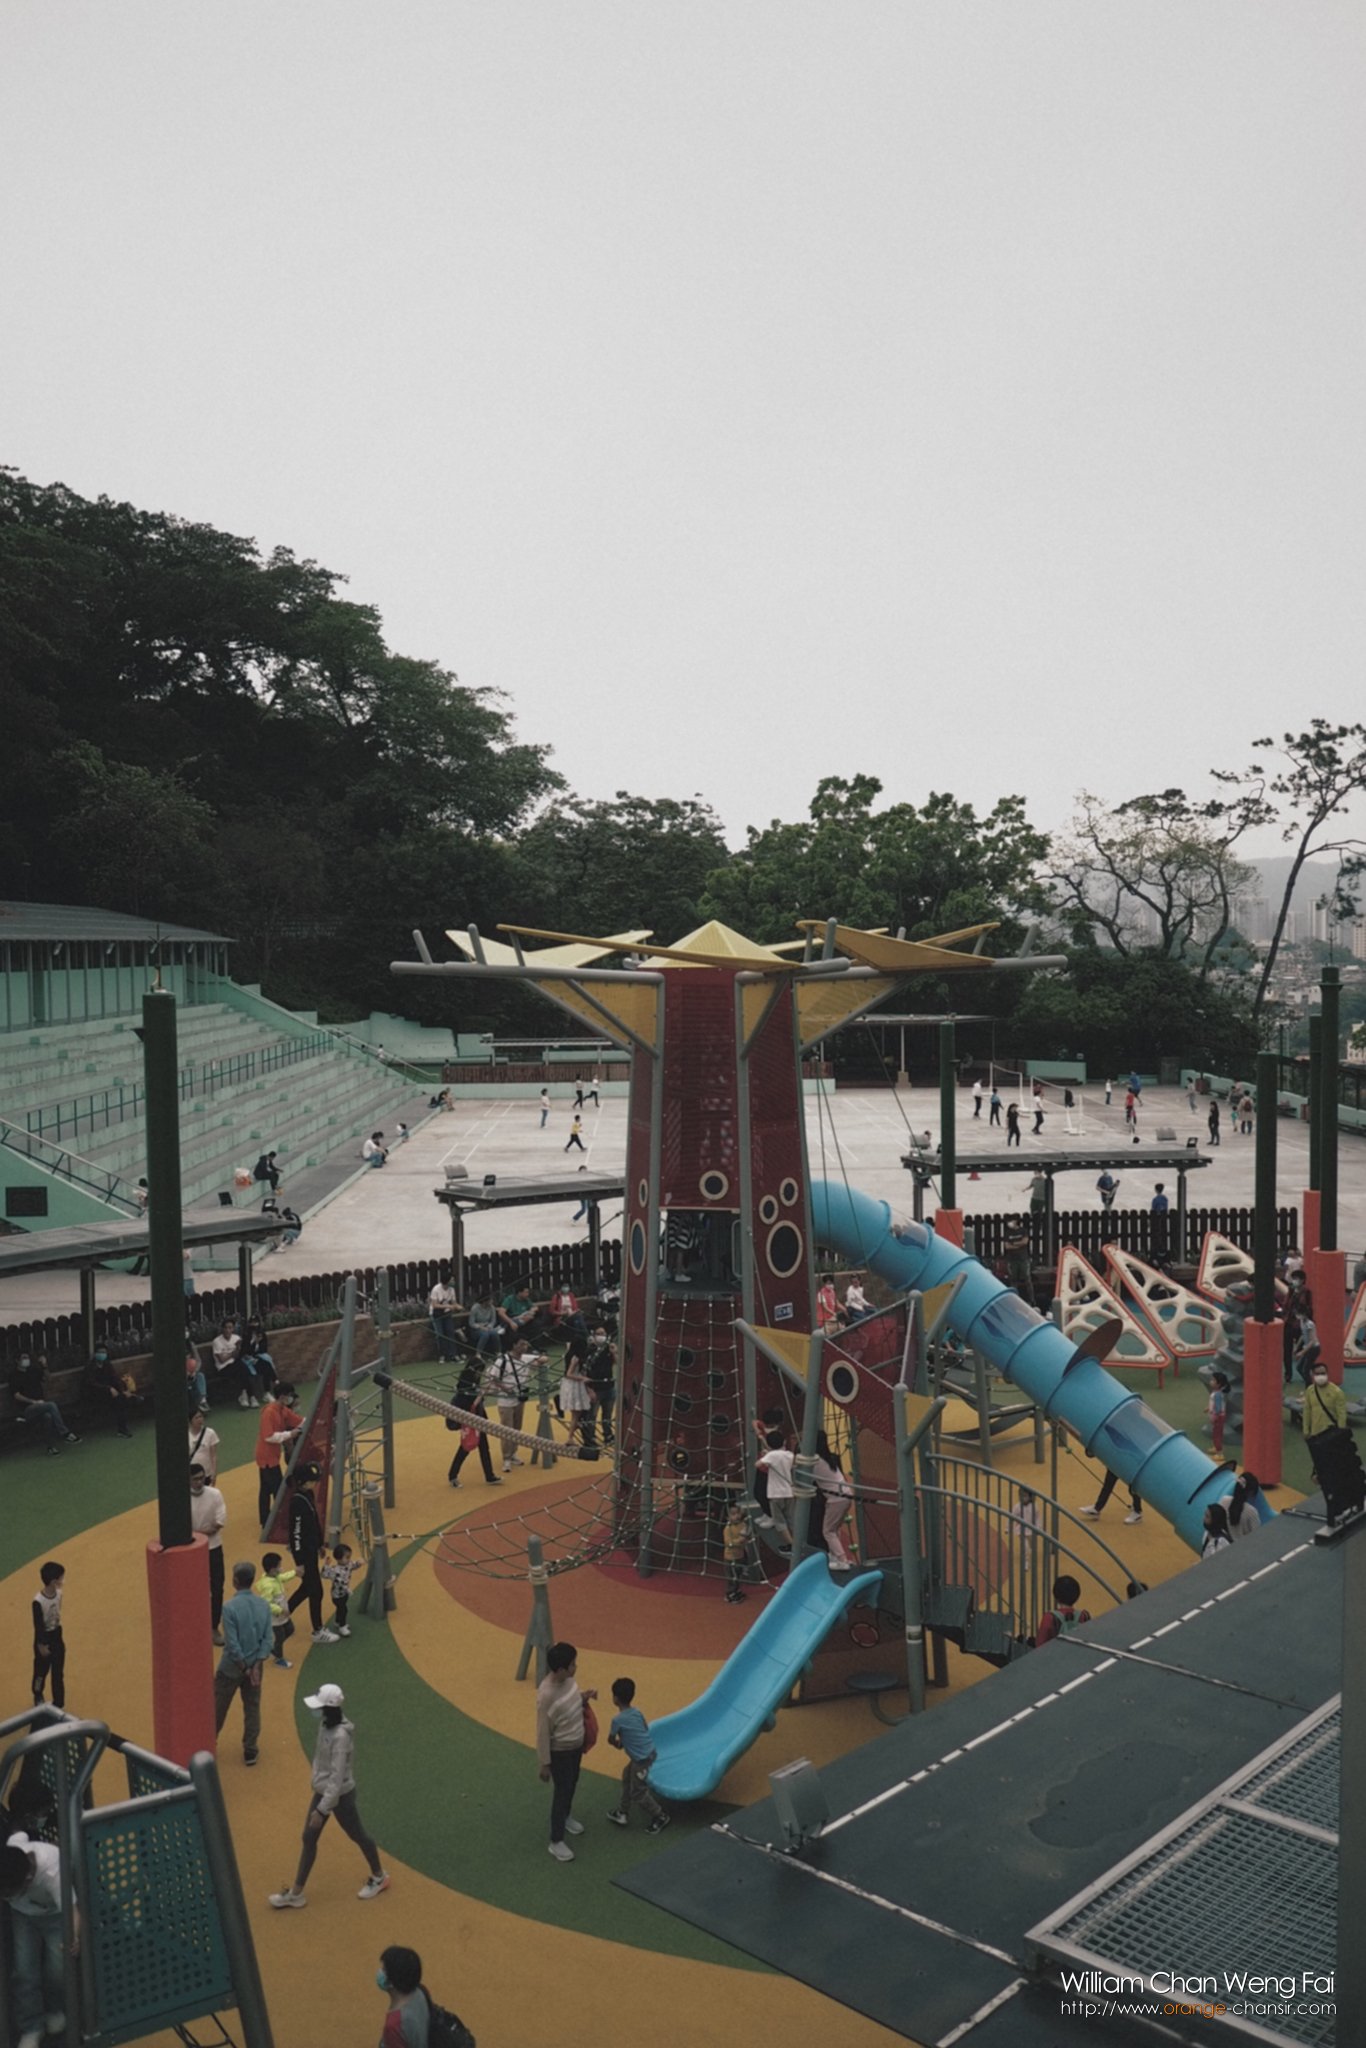 Playground / 2022